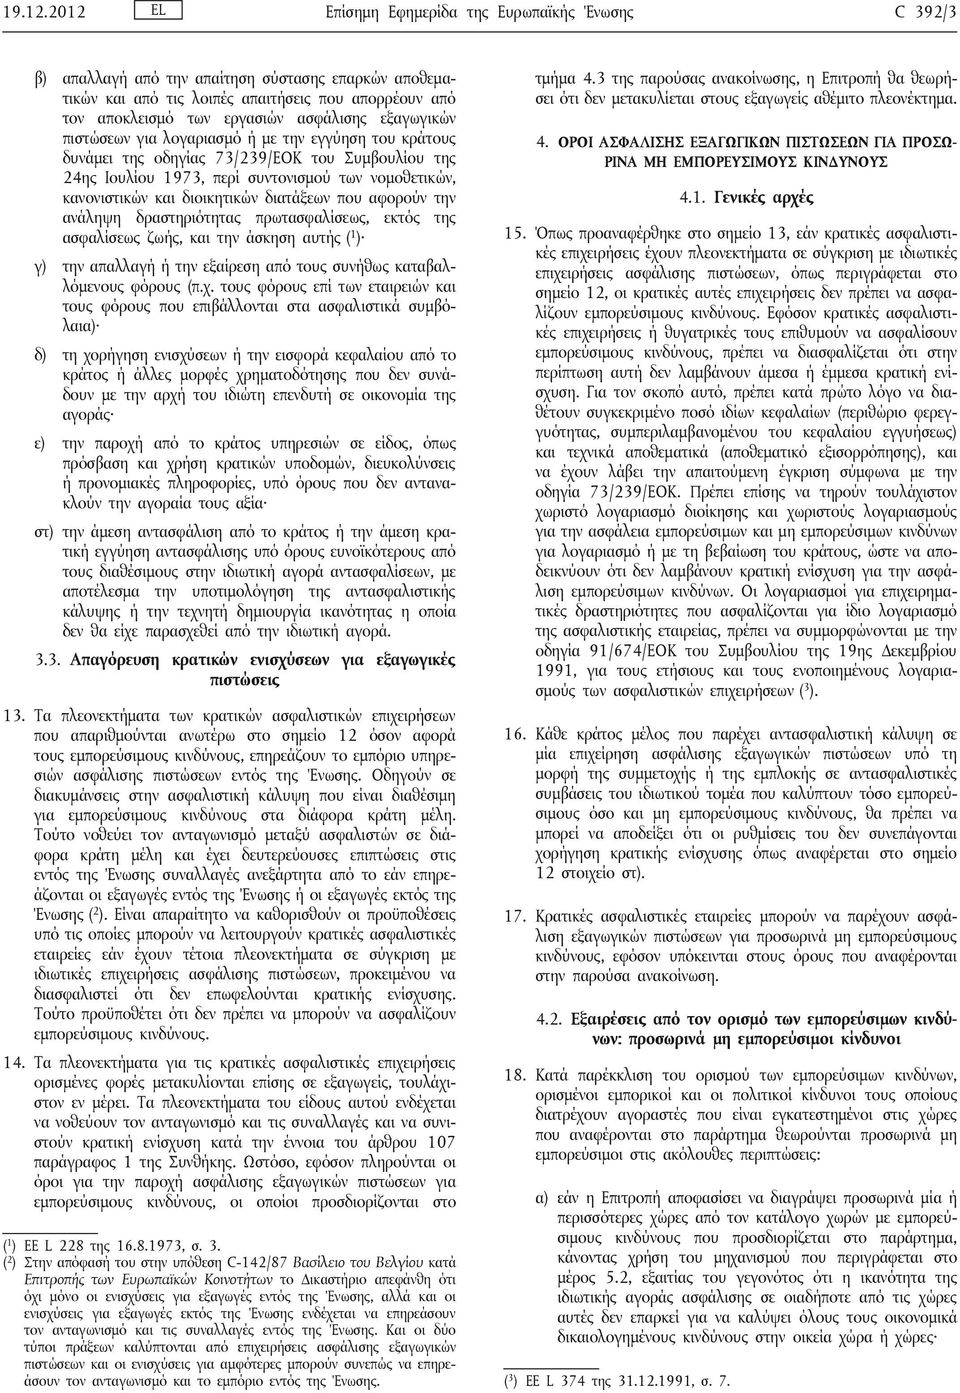 εξαγωγικών πιστώσεων για λογαριασμό ή με την εγγύηση του κράτους δυνάμει της οδηγίας 73/239/ΕΟΚ του Συμβουλίου της 24ης Ιουλίου 1973, περί συντονισμού των νομοθετικών, κανονιστικών και διοικητικών